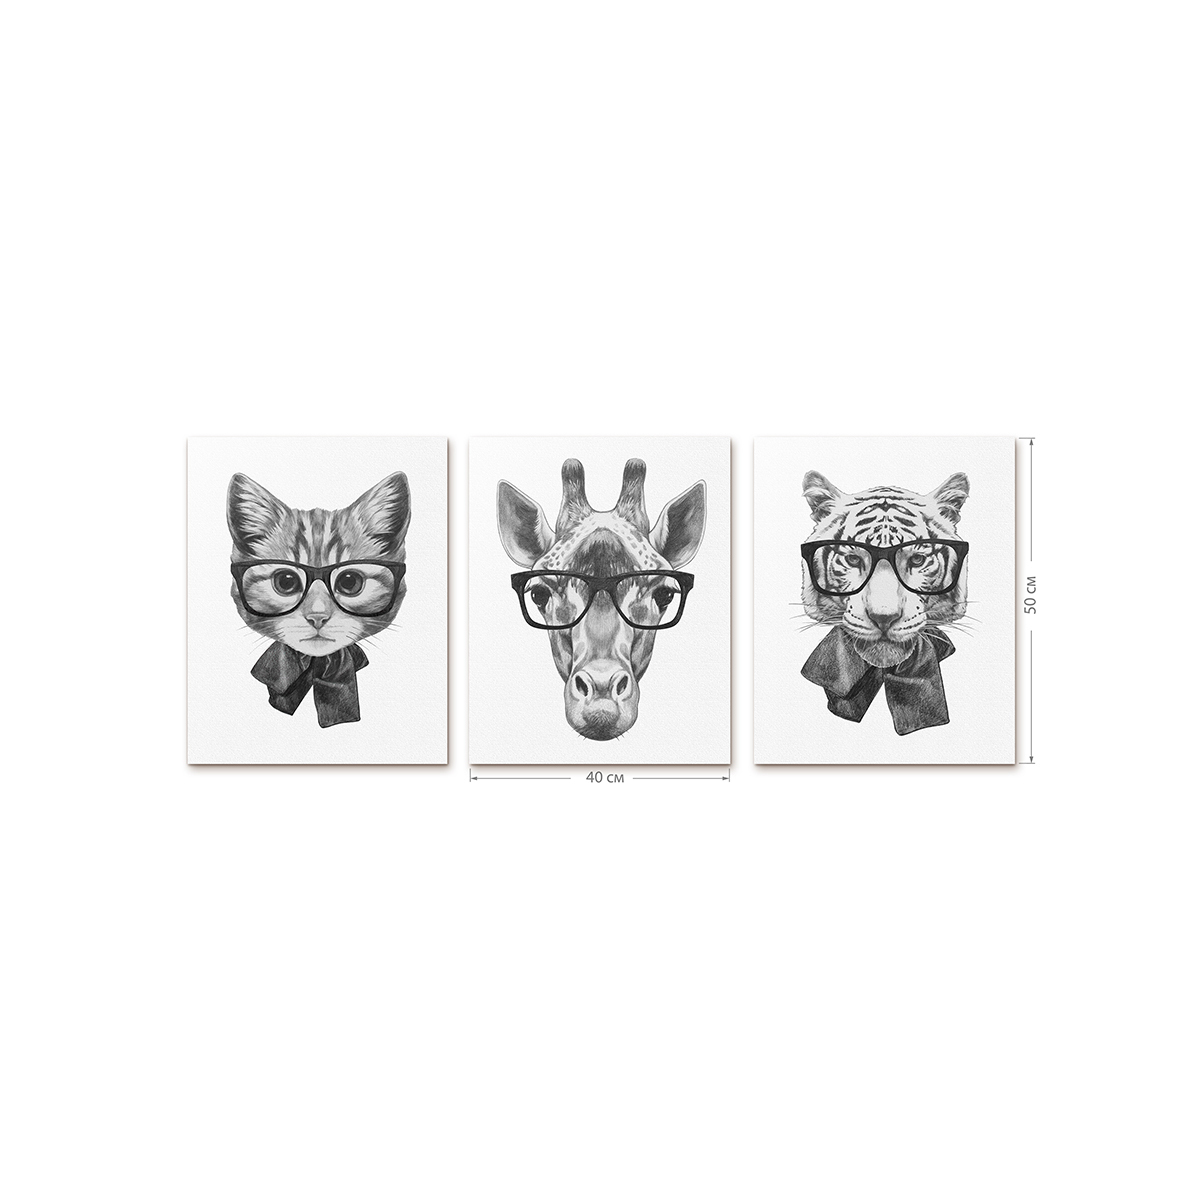 Интерьерный постер Moda interio Funny animals Милые животные 40х50 см 3 шт - фото 2